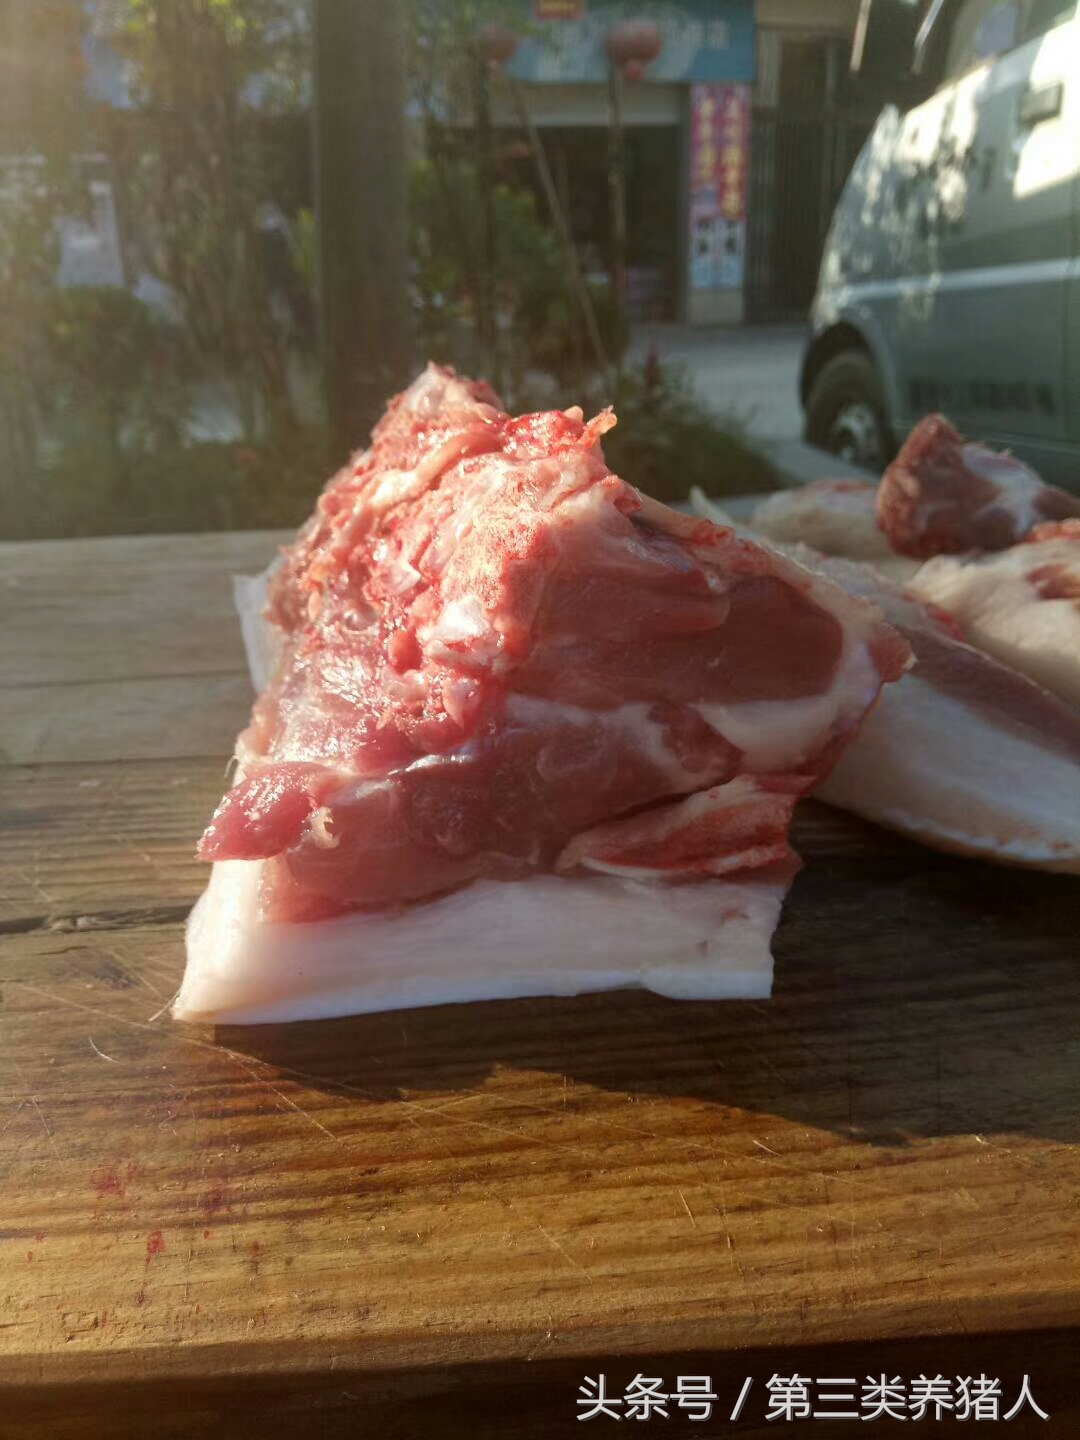 这才是真正的土猪肉,肉色深红,30元一斤